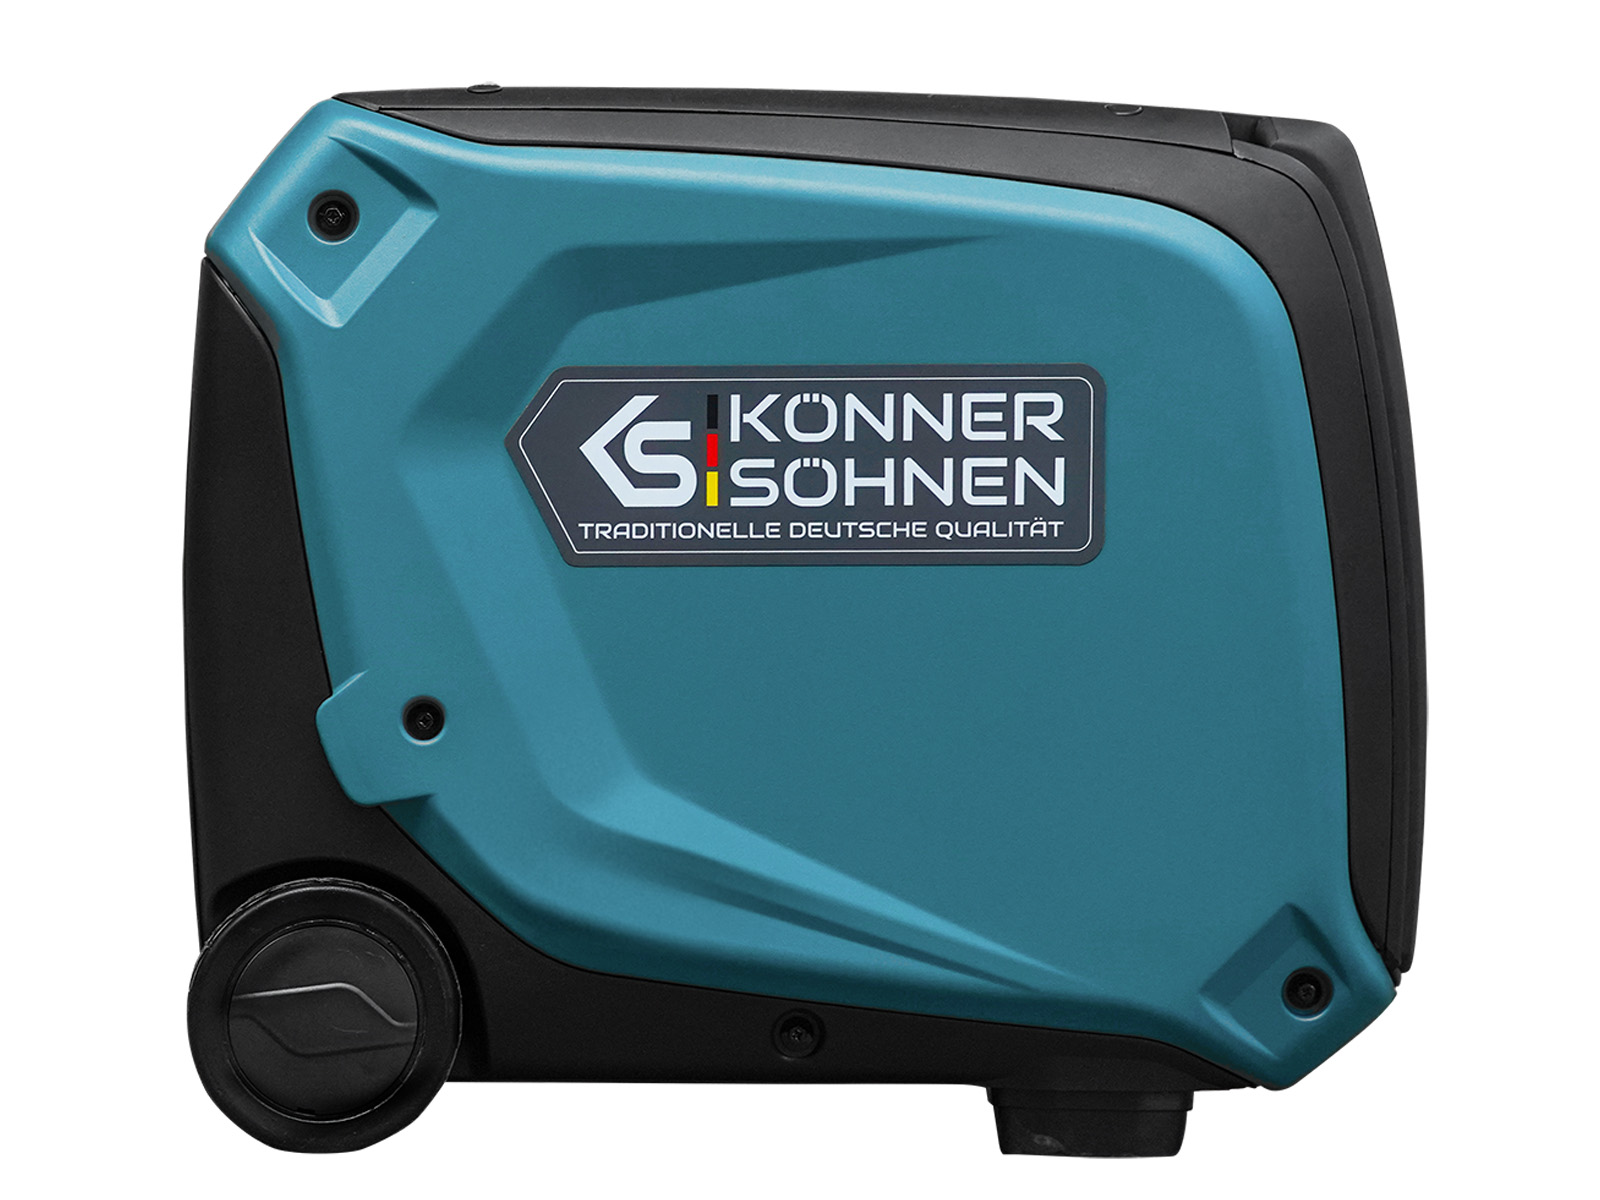 Générateur-onduleur dans la boîte anti-bruit KS 4000iE S